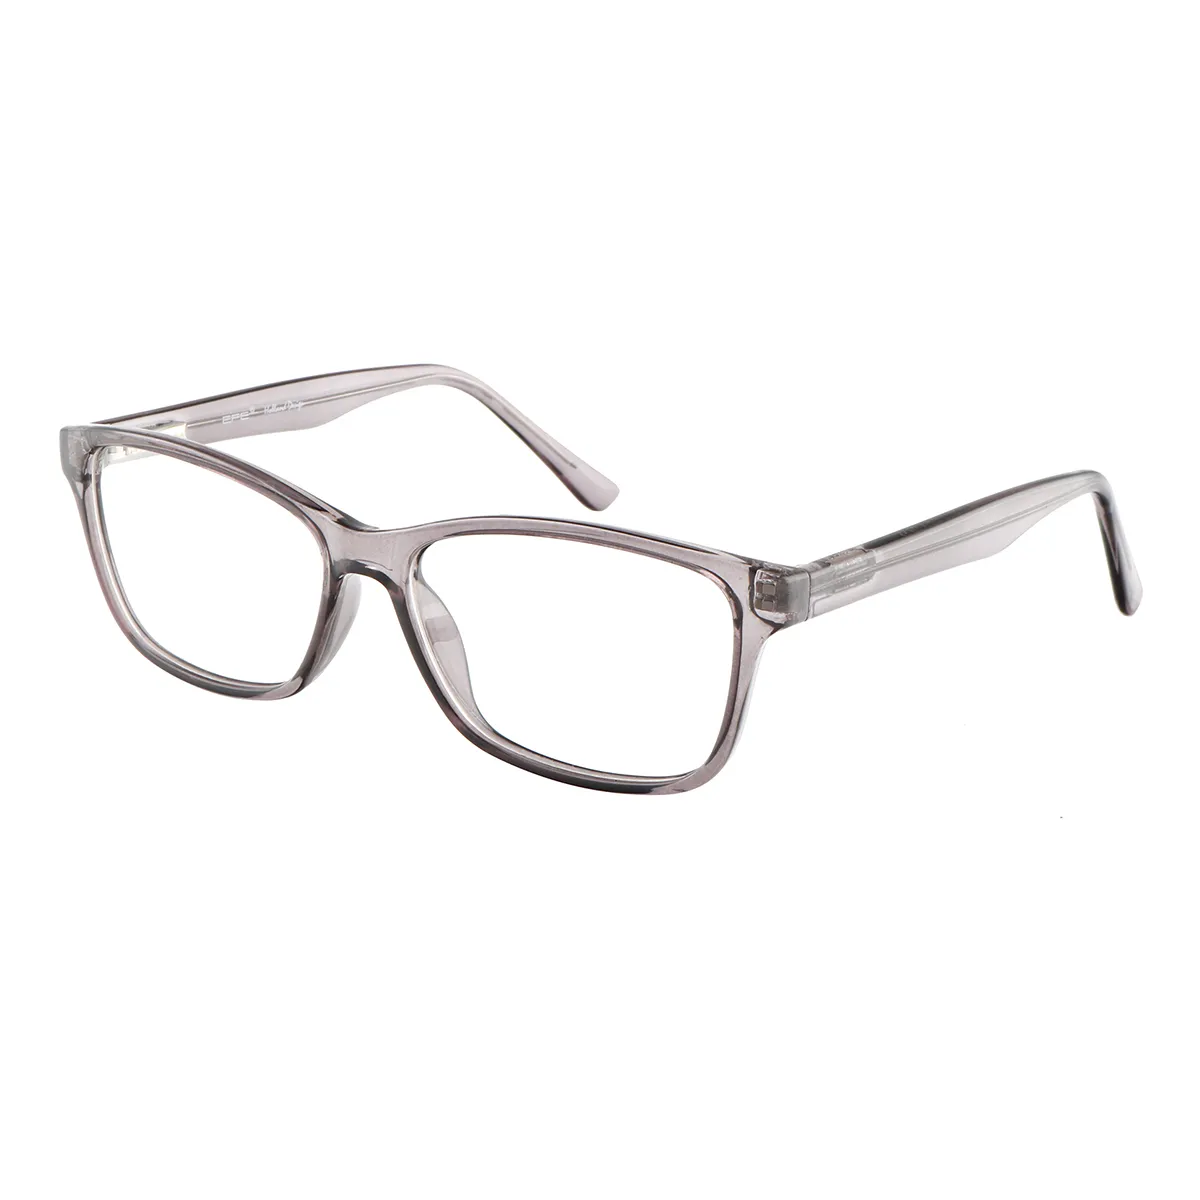 Haynes - Rectangle Gray Glasses for Men & Women - EFE